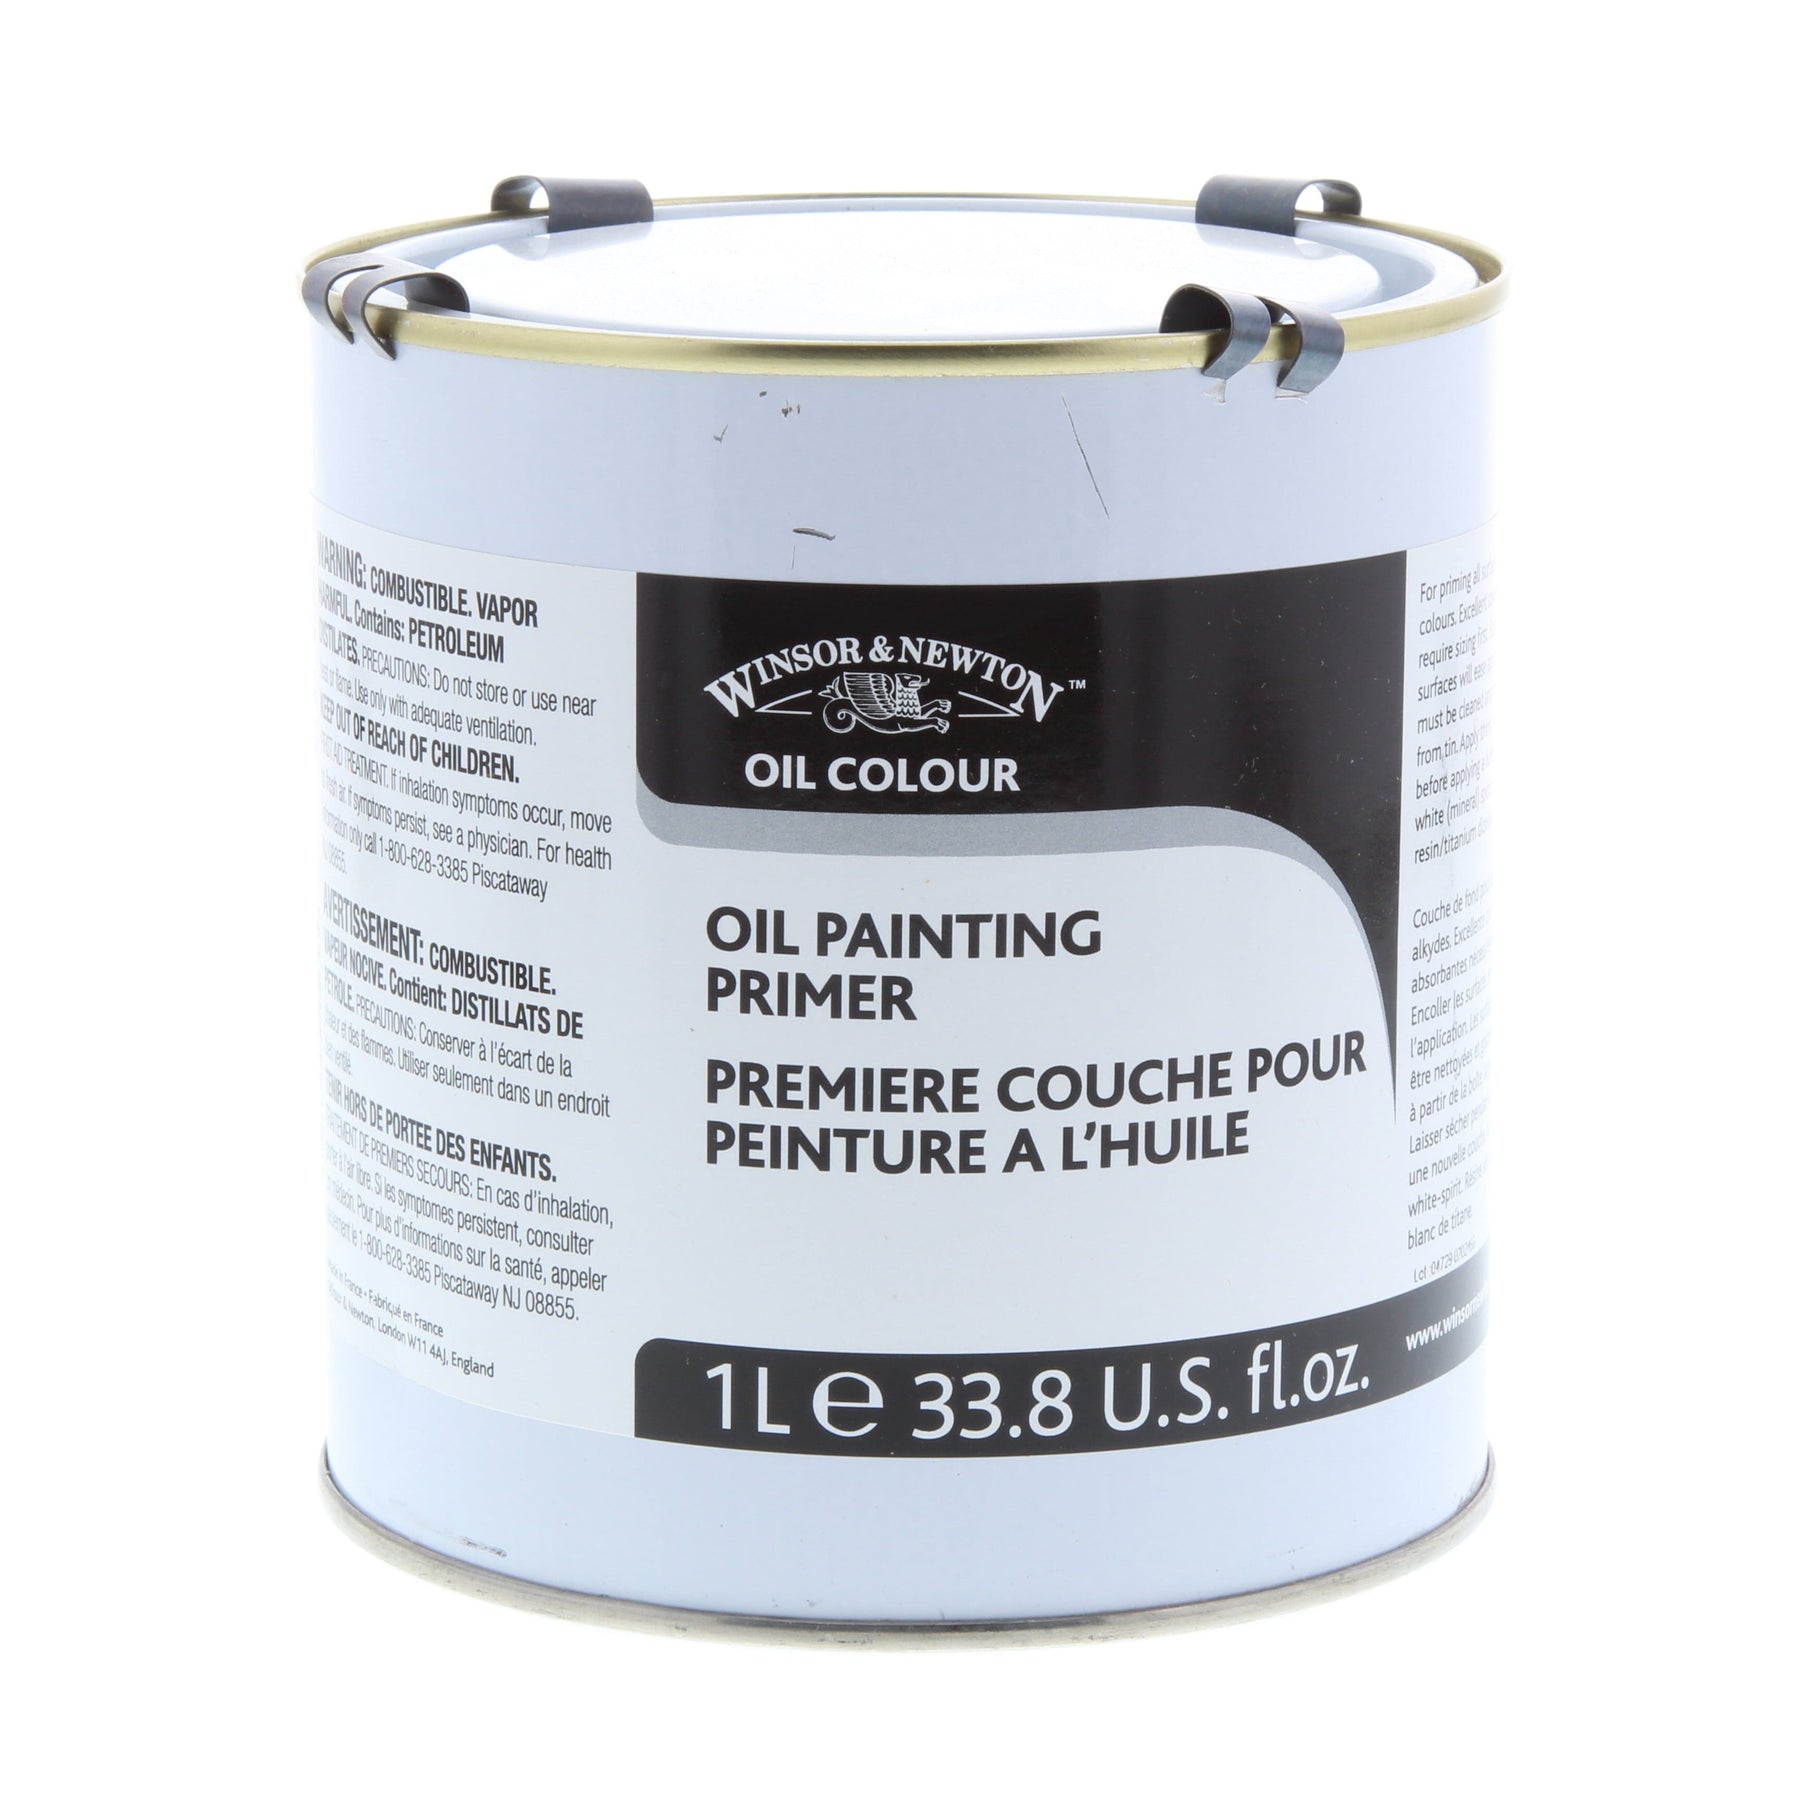 Oil Painting Primer